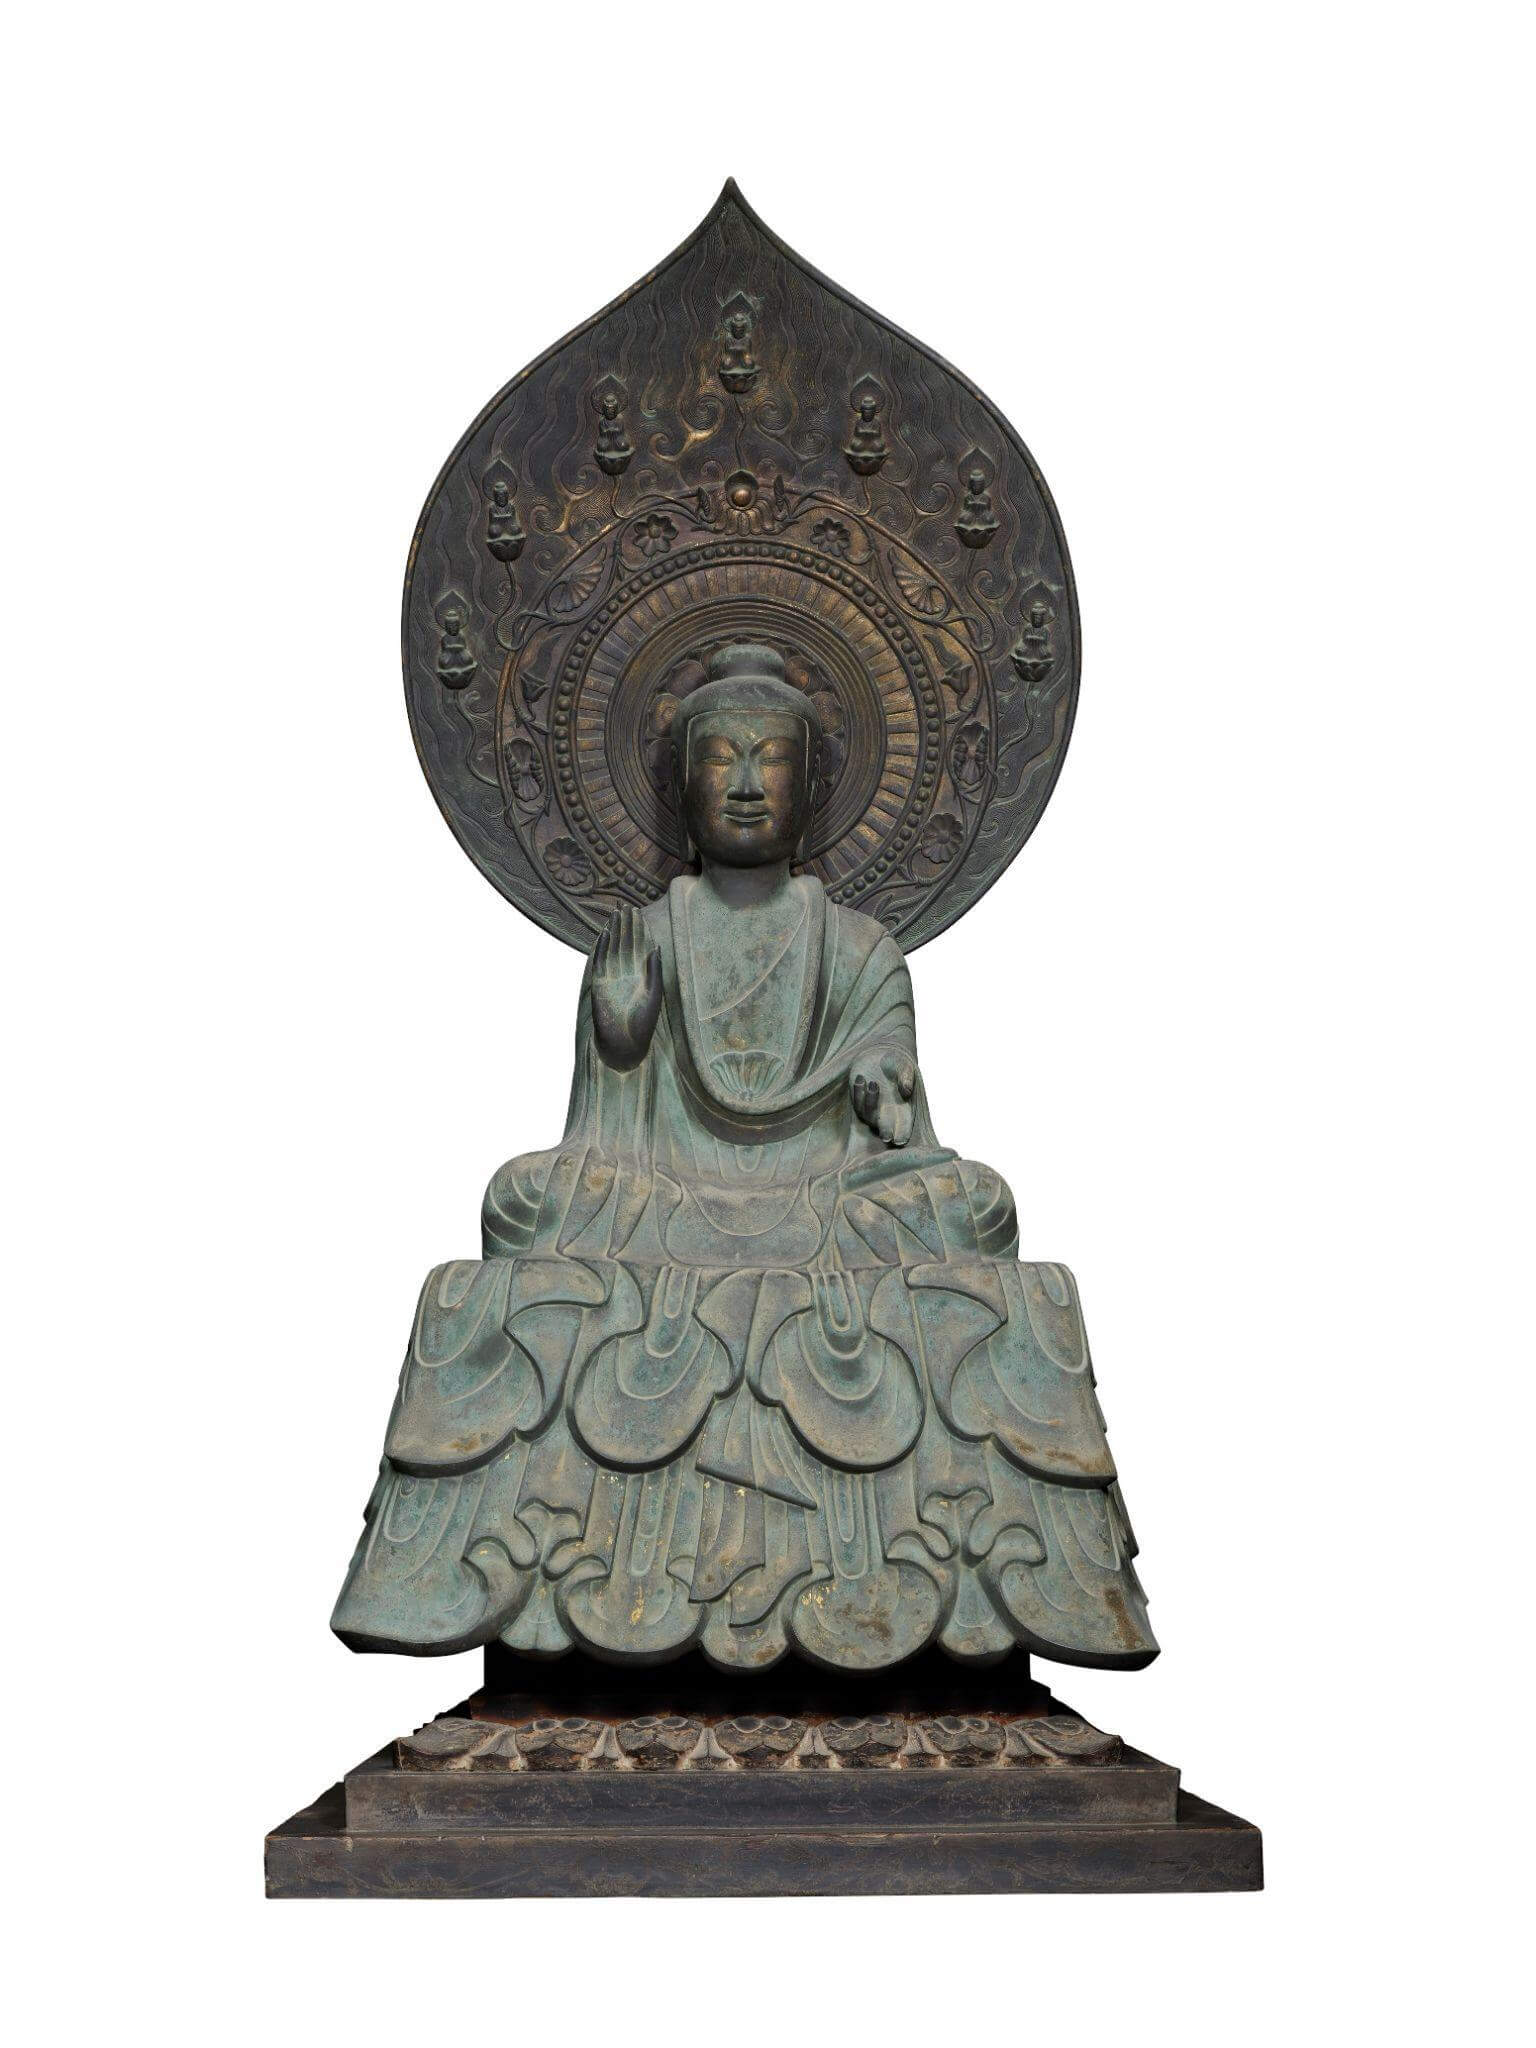 国宝級 7世紀 押出如来 飛鳥時代 重要文化財 仏教 法隆寺 東京国立 